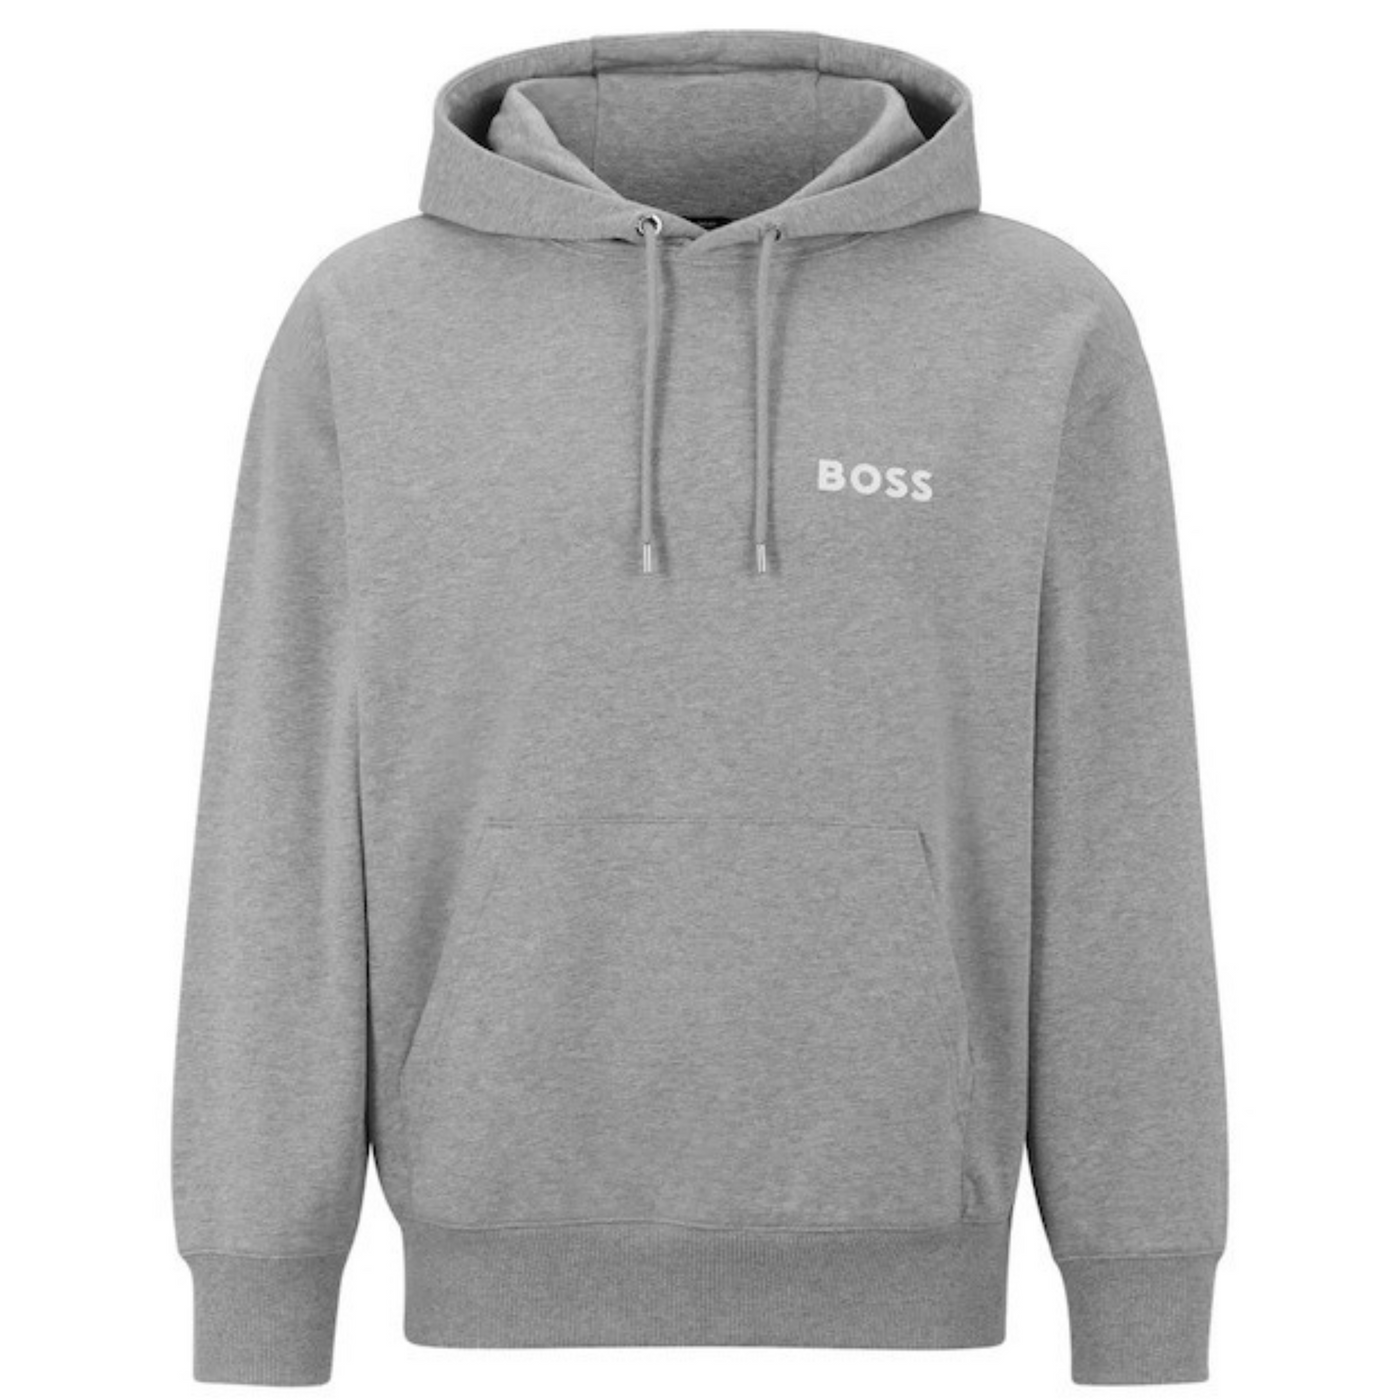 Boss Sweatshirt Hoodie Grey